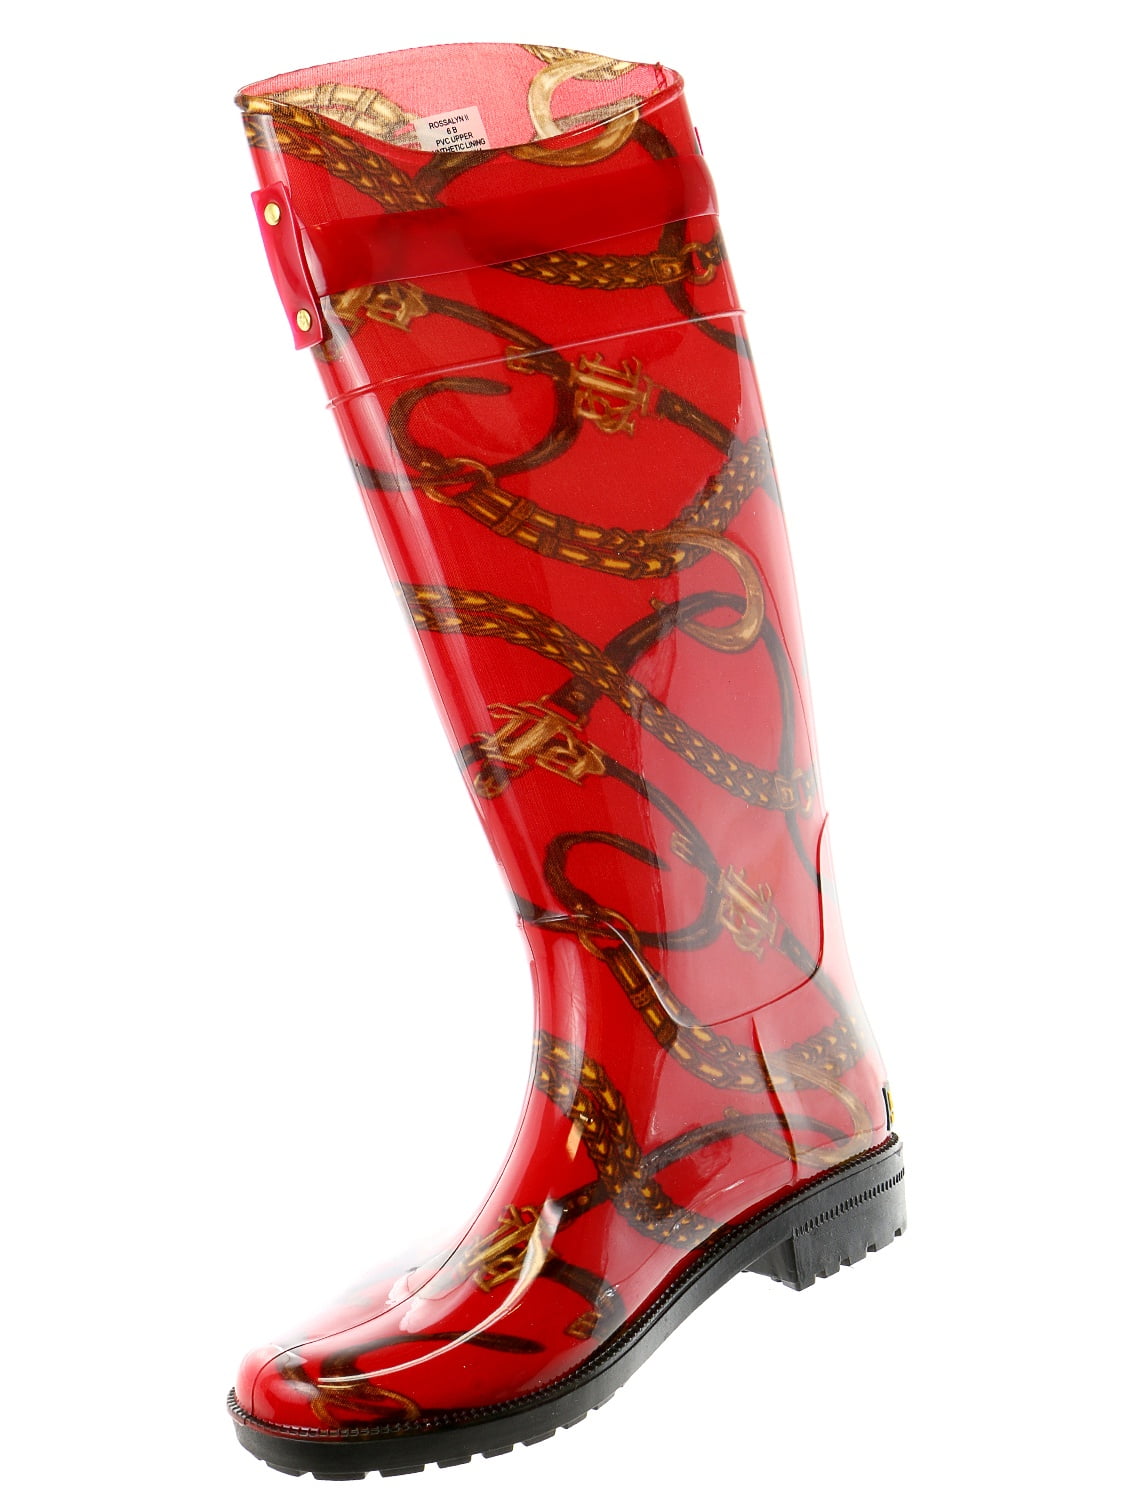 ralph lauren rossalyn rain boots